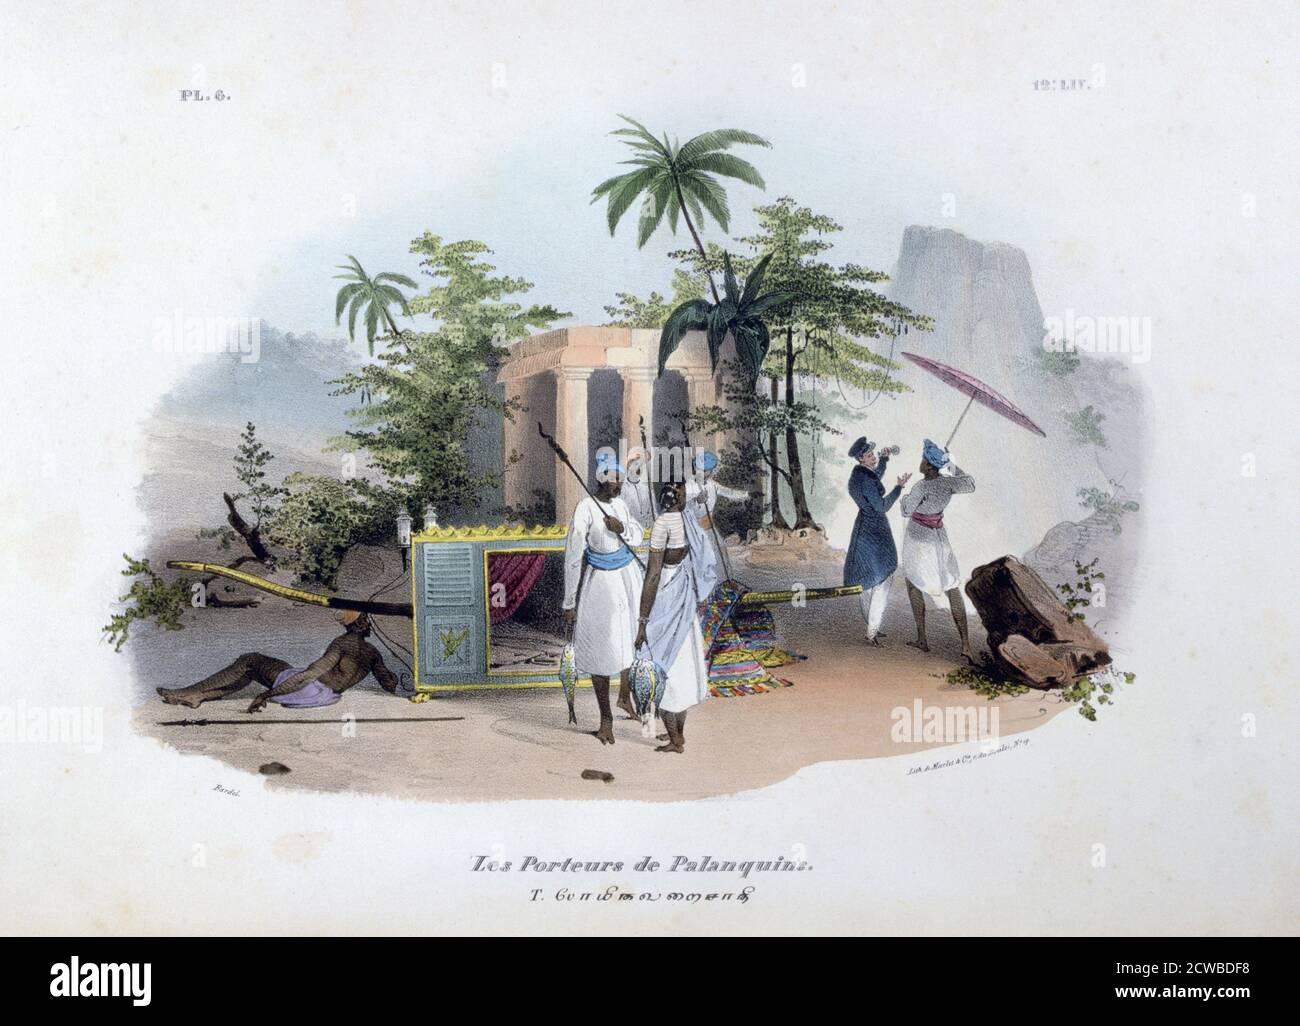 Porteurs de Palanquins', 1828. Una stampa di l'Inde Francaise, 1828. Trovato nella collezione di Jean Claude Carriere. Dell'artista francese Jean Henri Marlet. Foto Stock